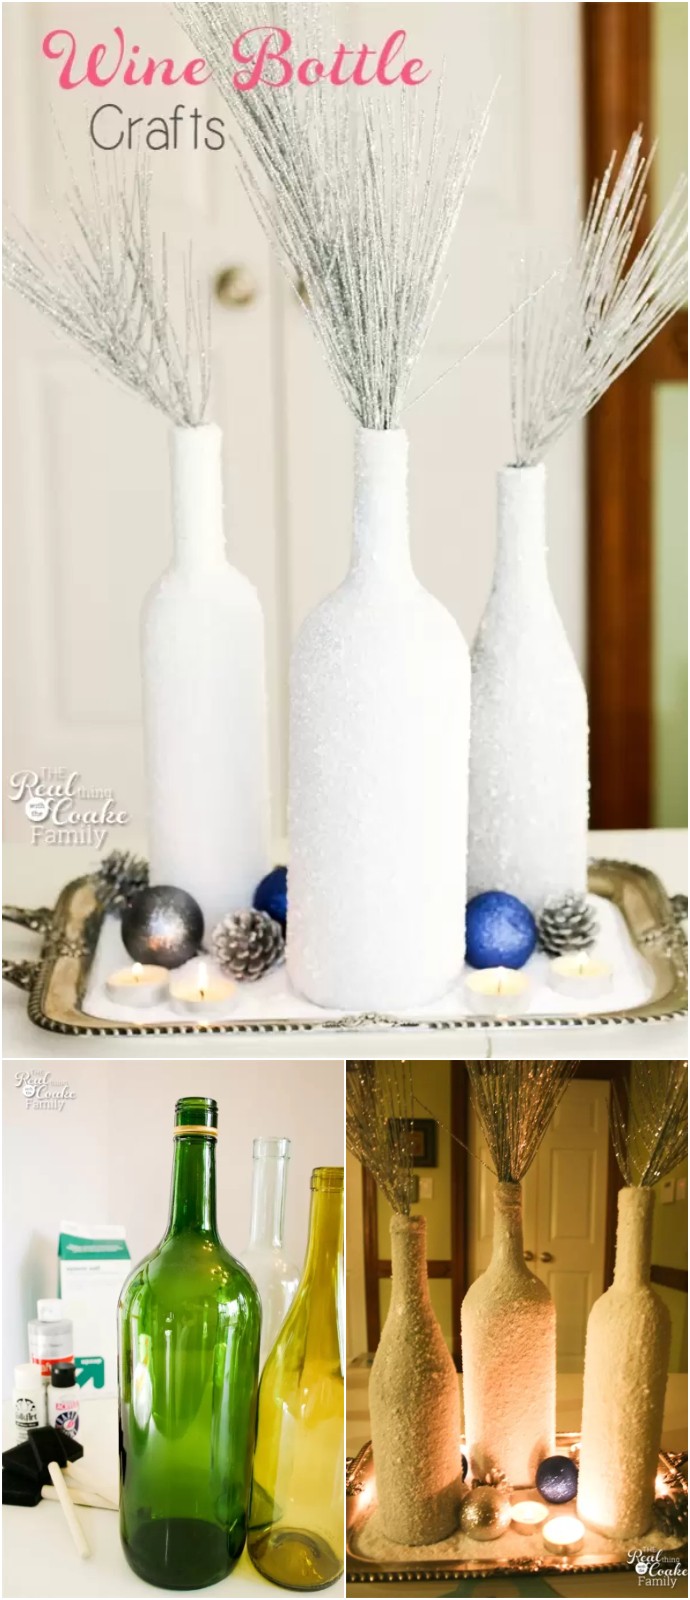 Wine Bottle Crafts